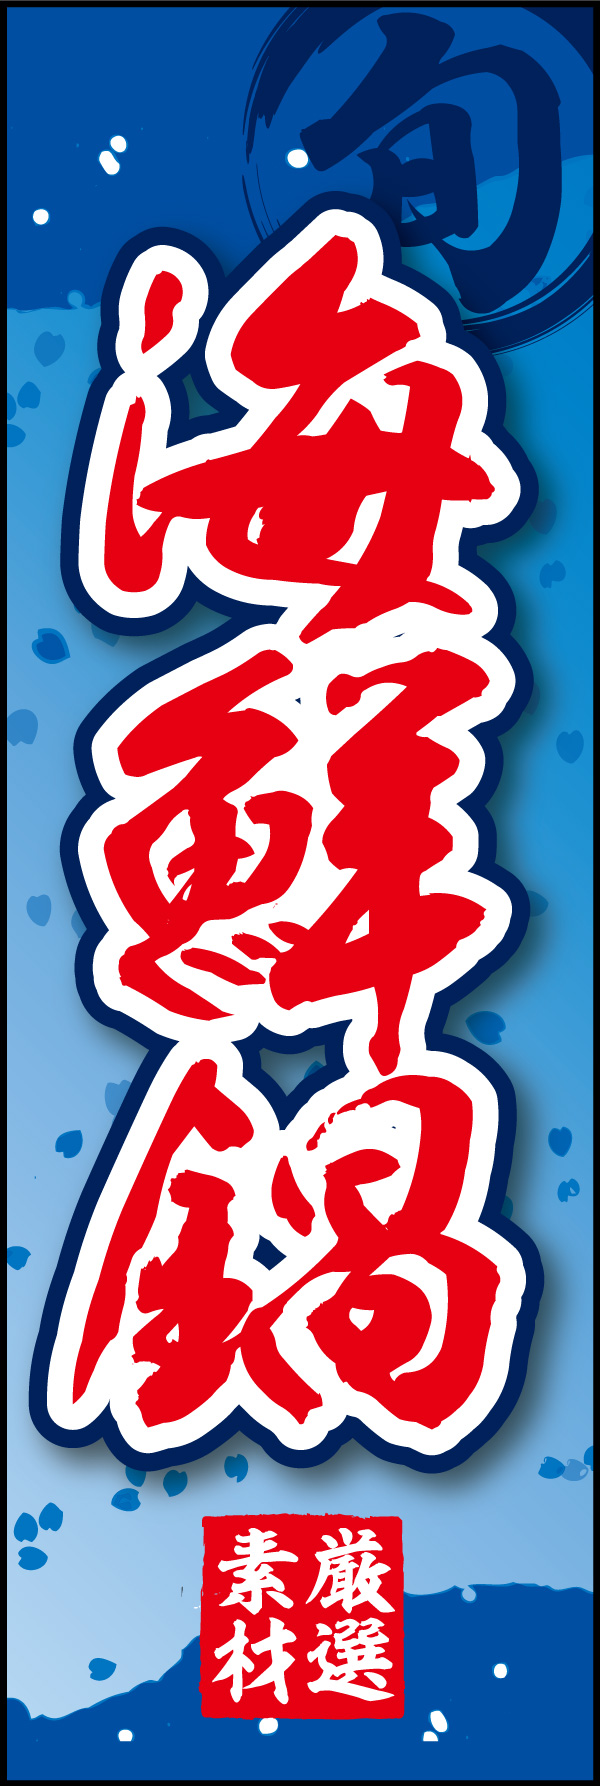 海鮮鍋 06「海鮮鍋」ののぼりです。和柄をベースに筆文字で「和」のイメージを強調してみました。(Y.M) 